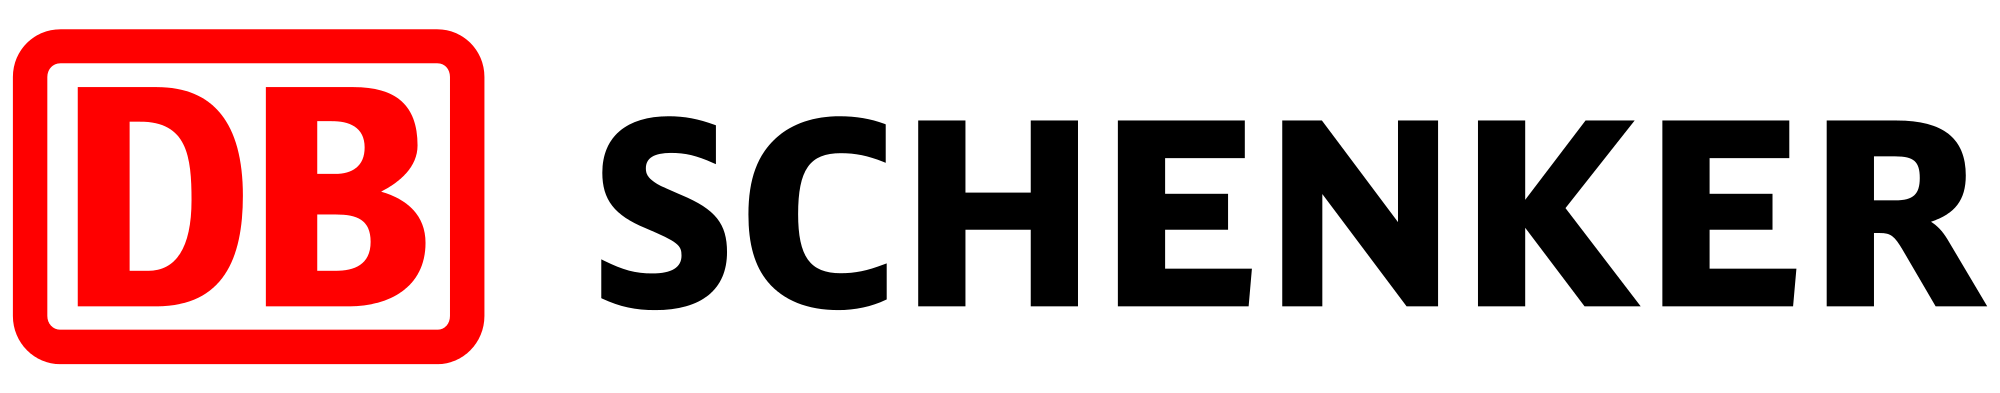 Logo_DB_Schenker.svg